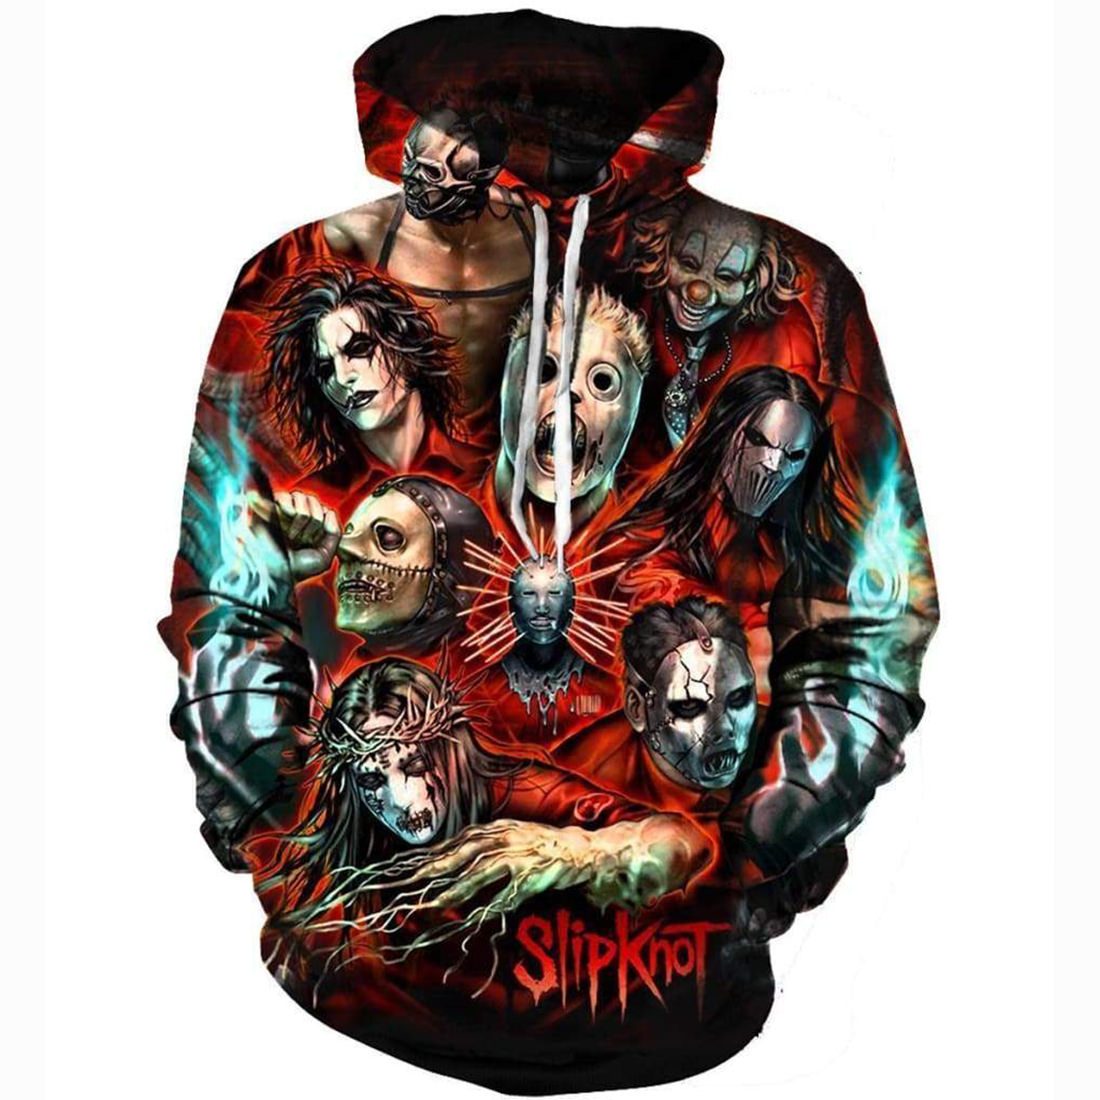 Slipknot Hoodies – Pullover Red Zombie Hoodie